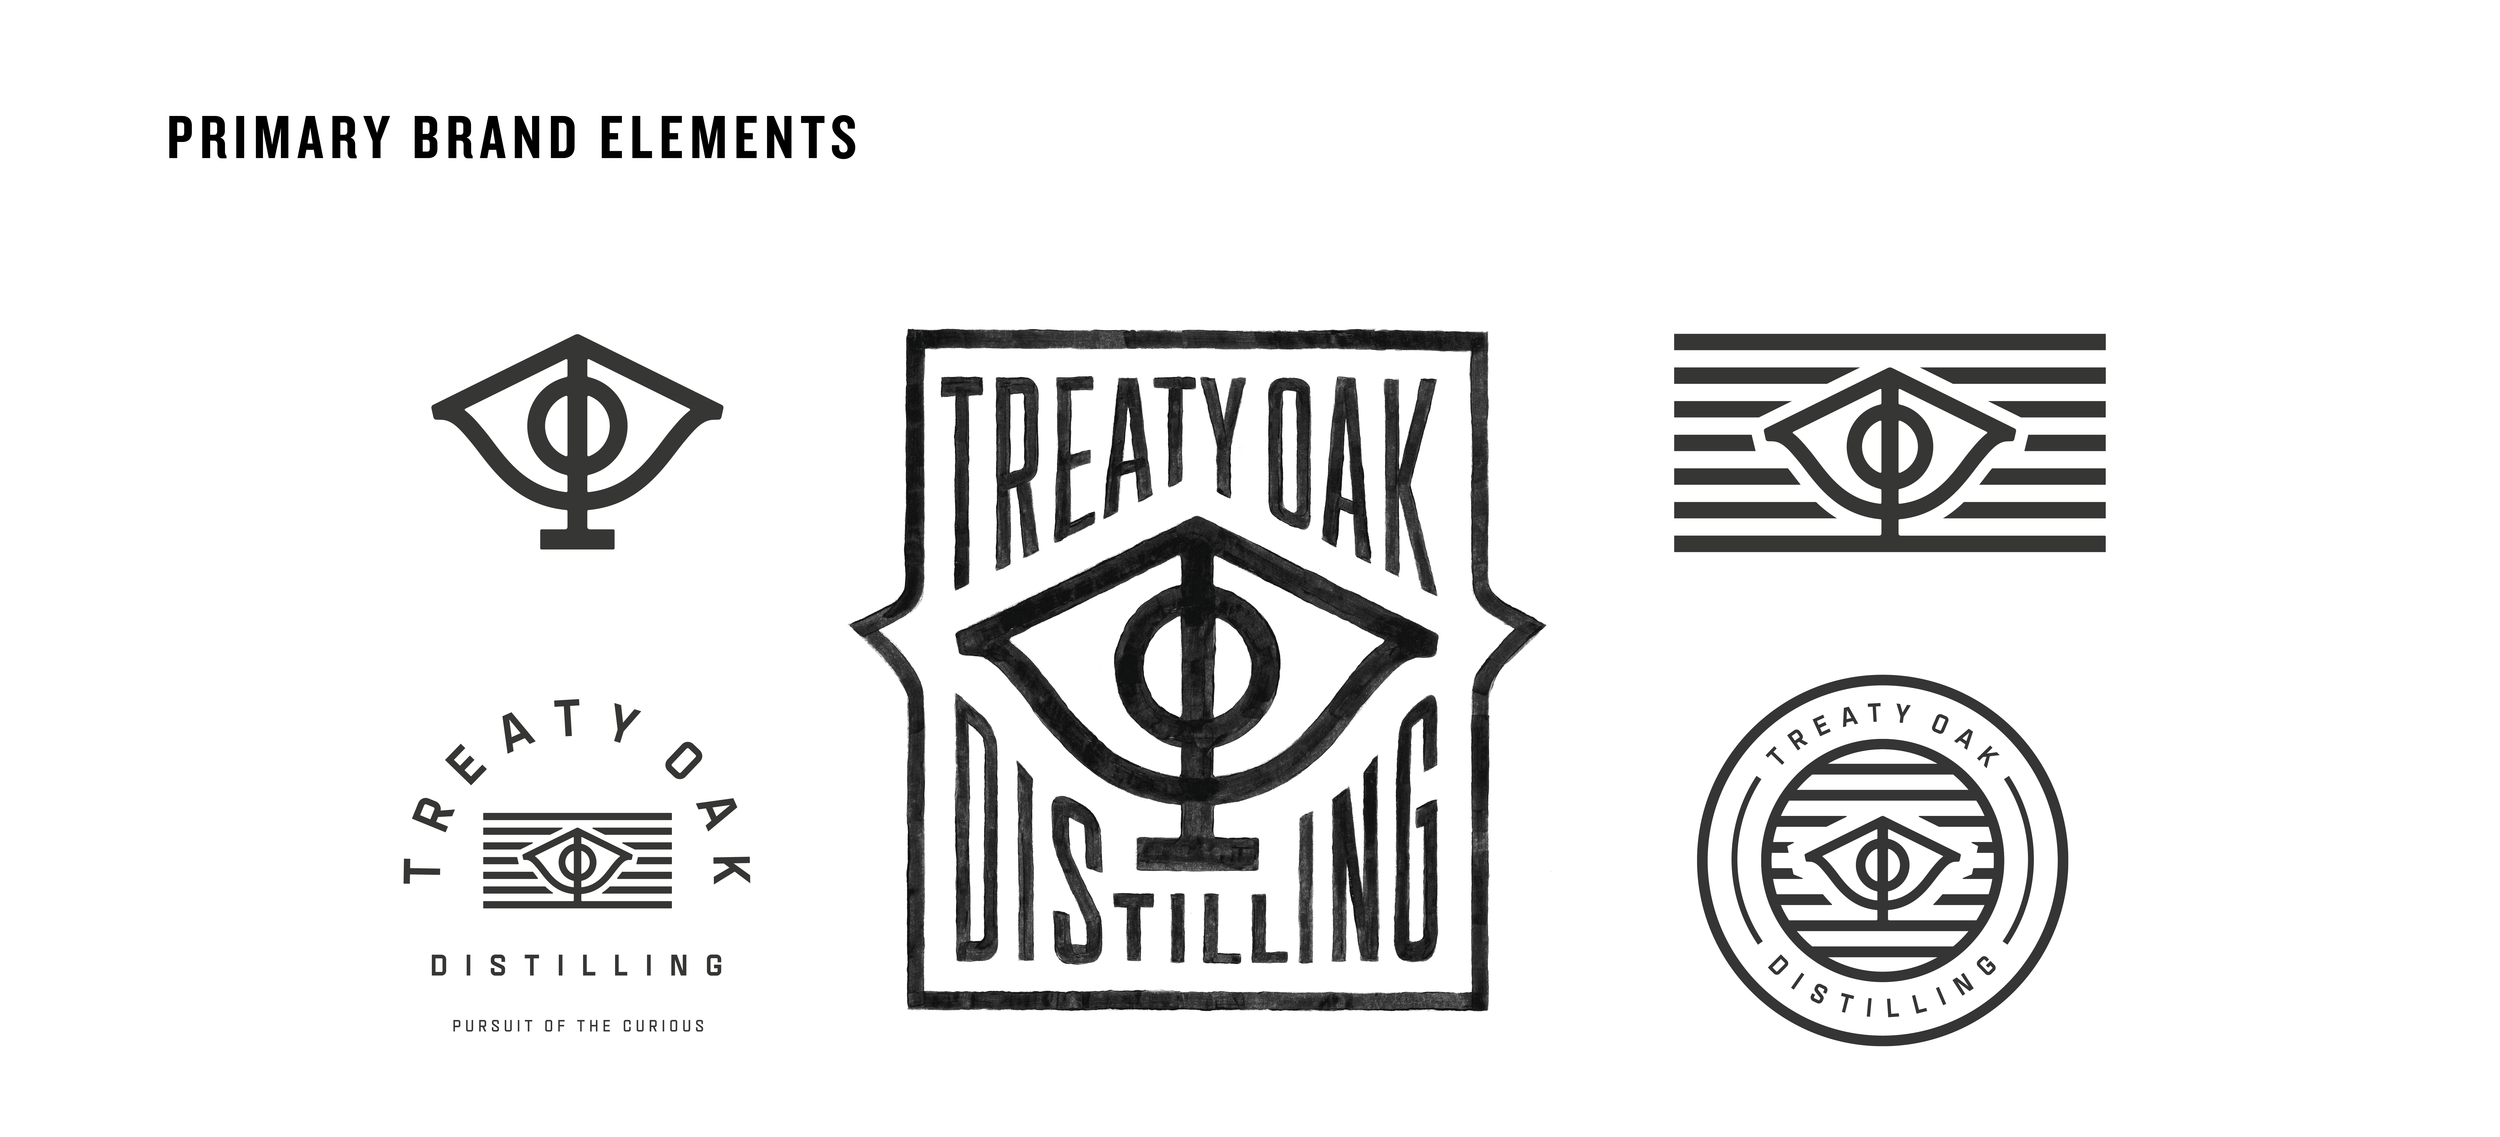 BRAND ASSETS — Treaty Oak Distilling